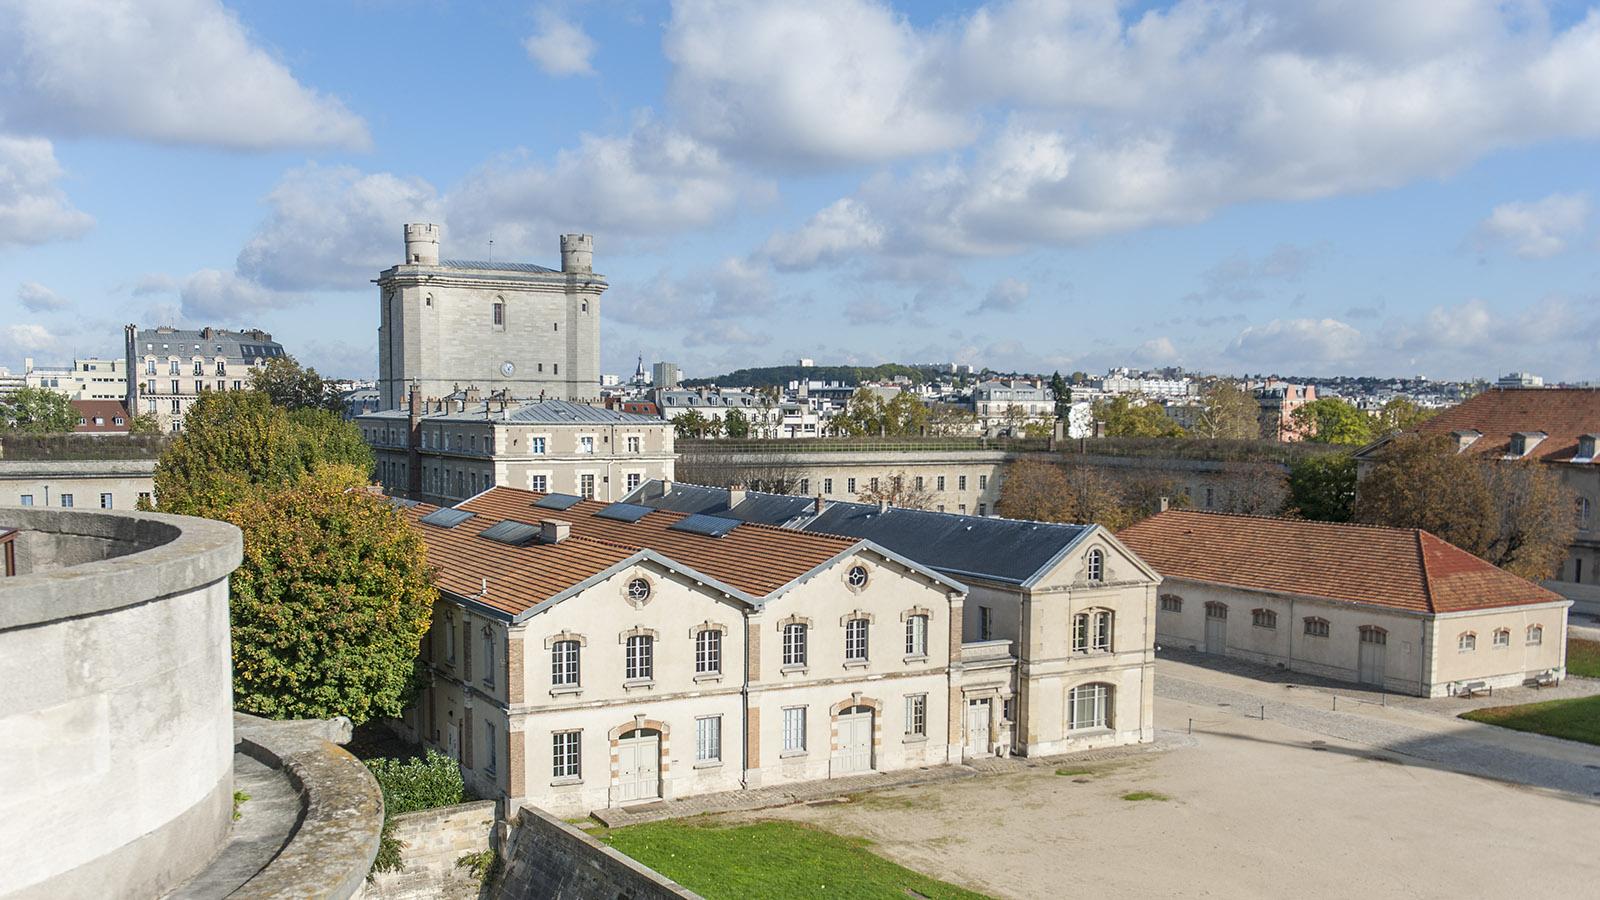 Der Donjon überragt die gesamte Schlossanlage von Vincennes. Foto: Hilke Maunder